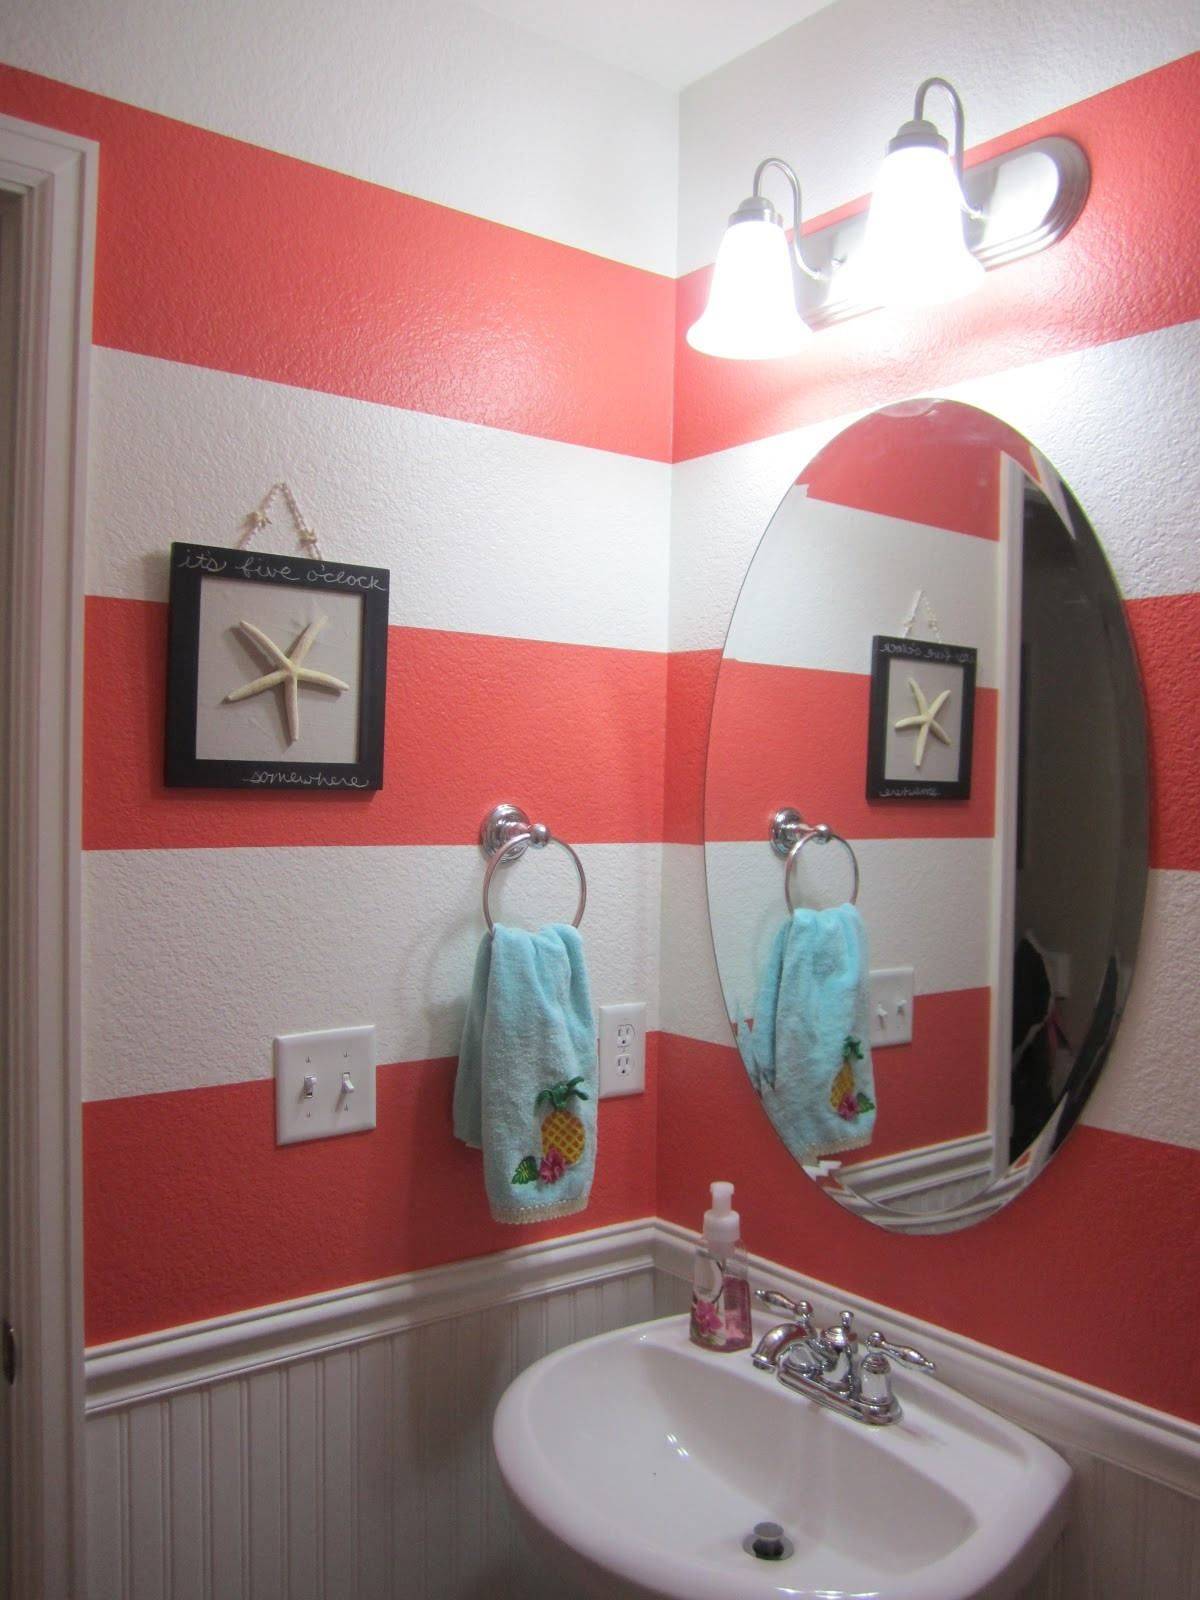 Покраска стен в ванной комнате своими руками: советы и рекомендации